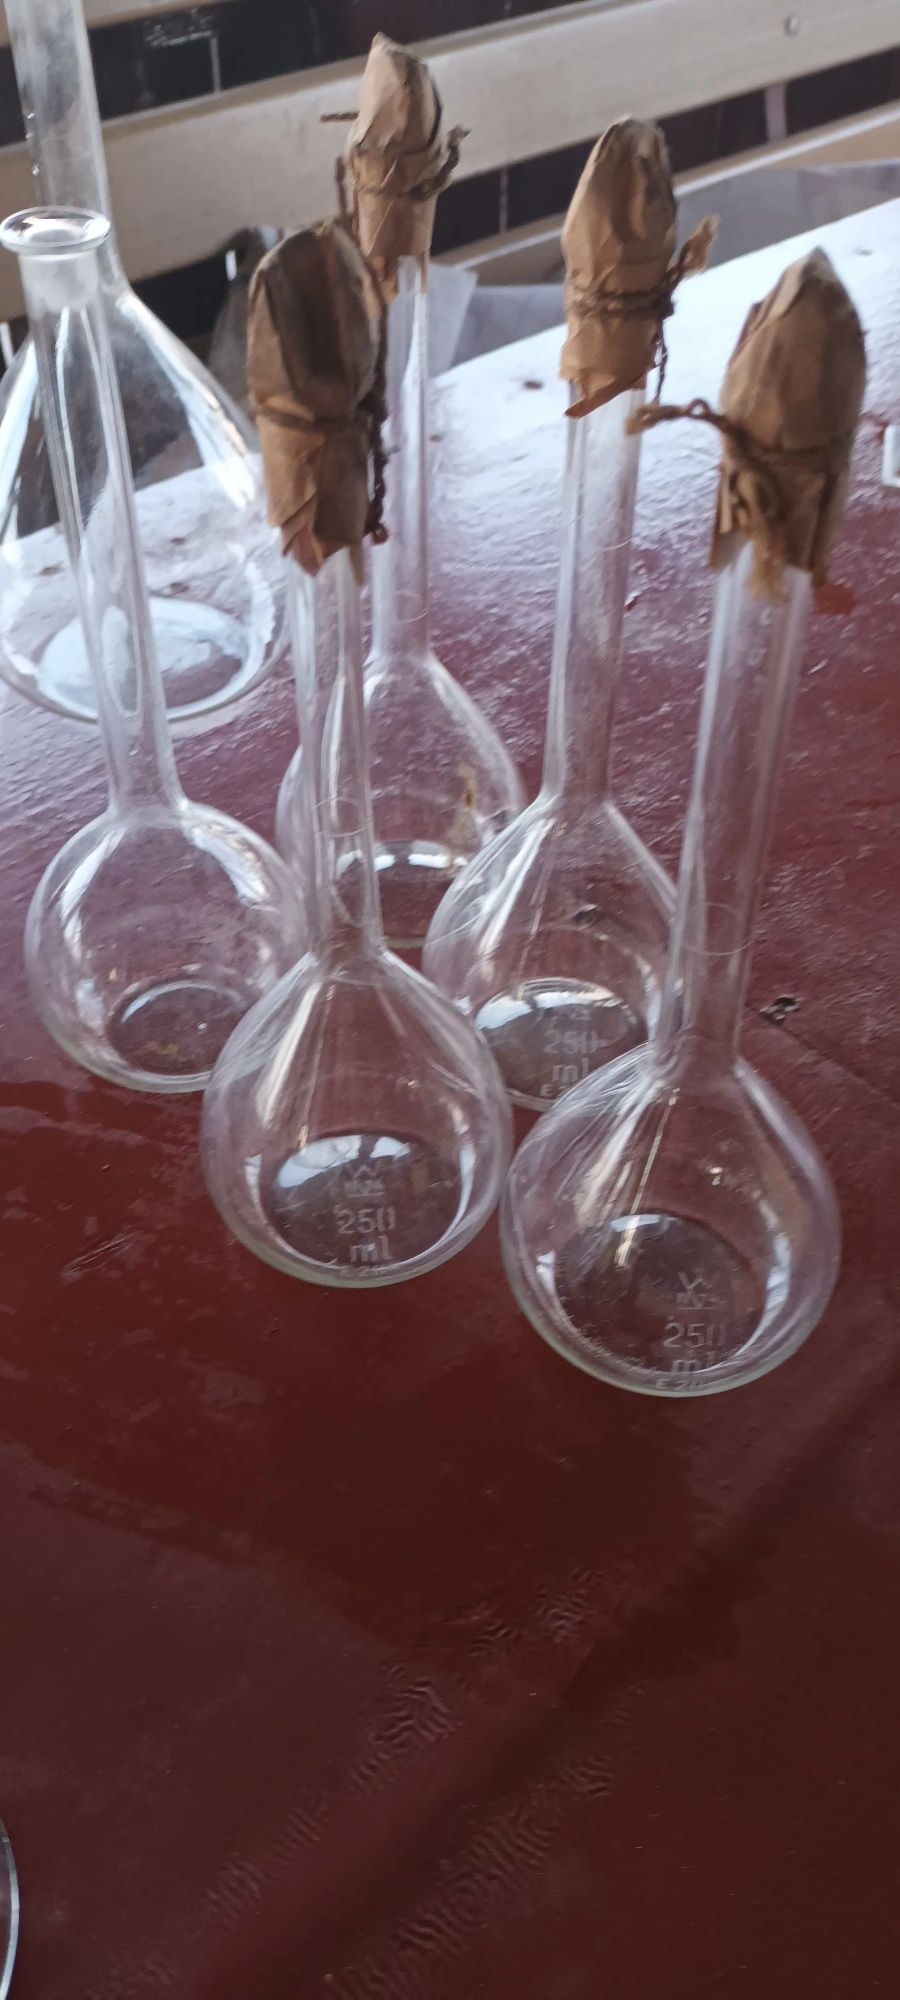 Baloane Berzelius,pahare și pipete gradate sticlărie laborator.